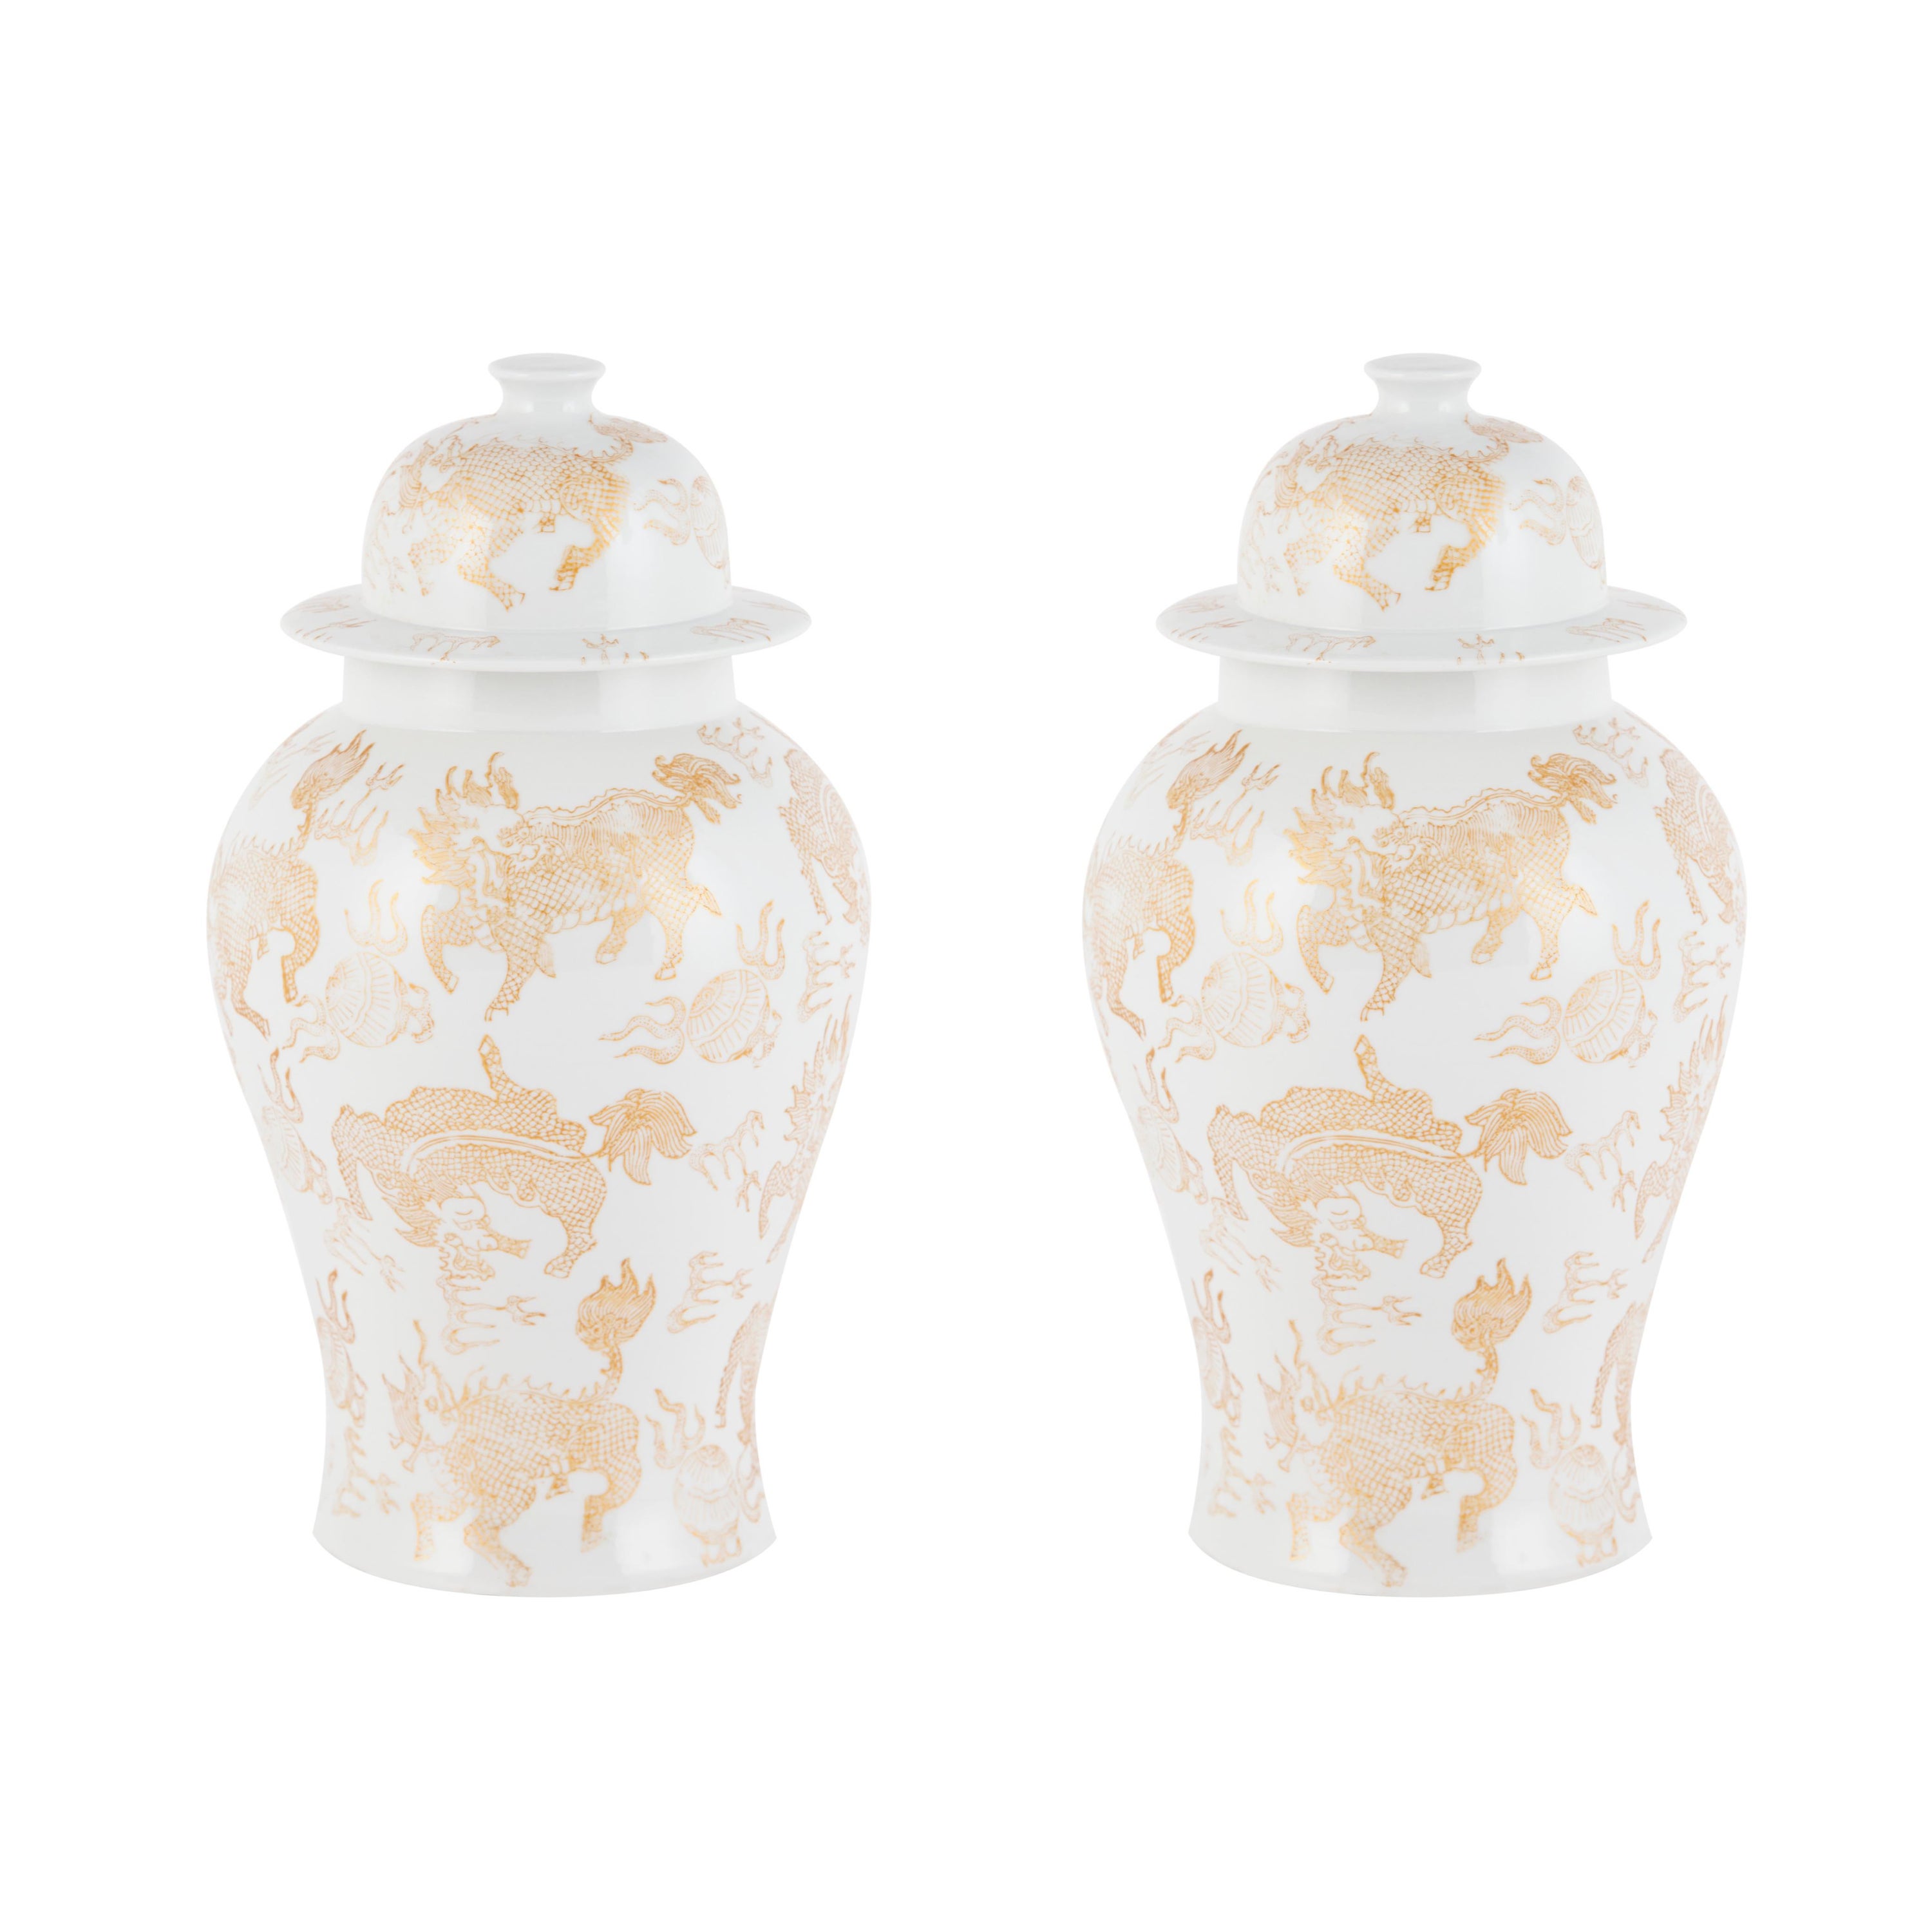 Ensemble de 2 pots de Han en porcelaine, or et blanc, moulés à la main et peints à la main